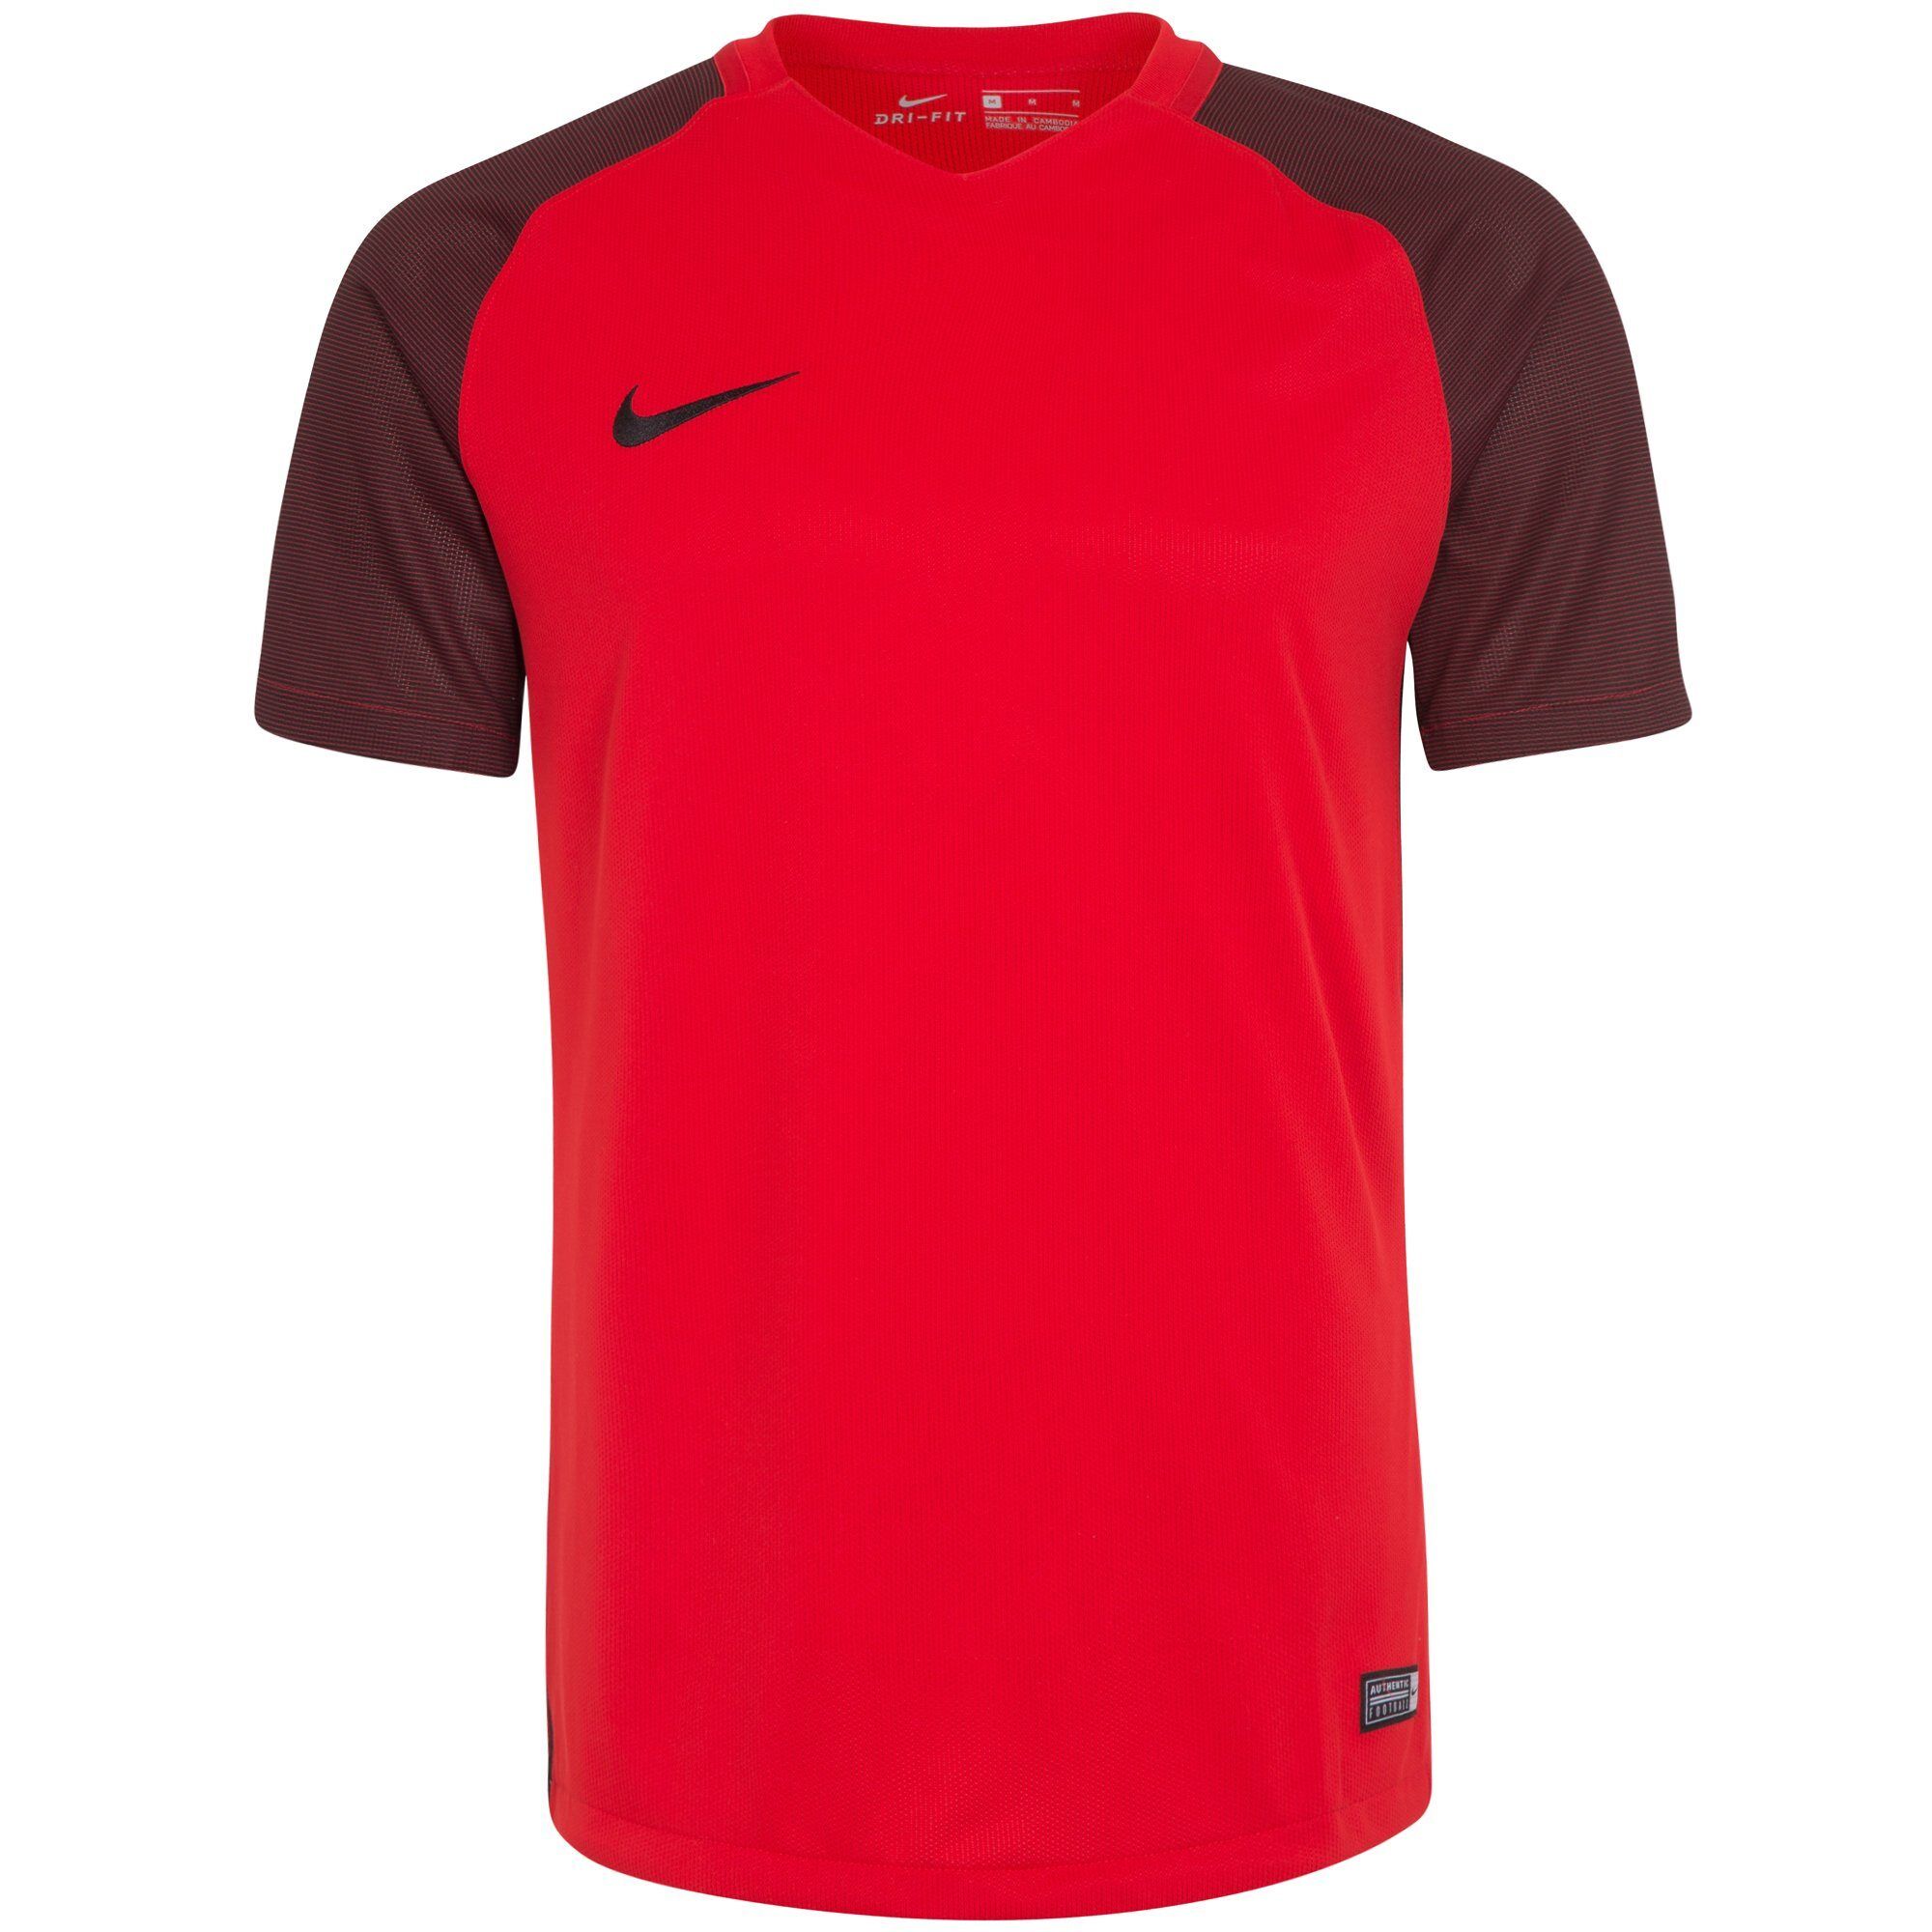 Nike Fußballtrikot »Revolution Iv«, rot-dunkelrot